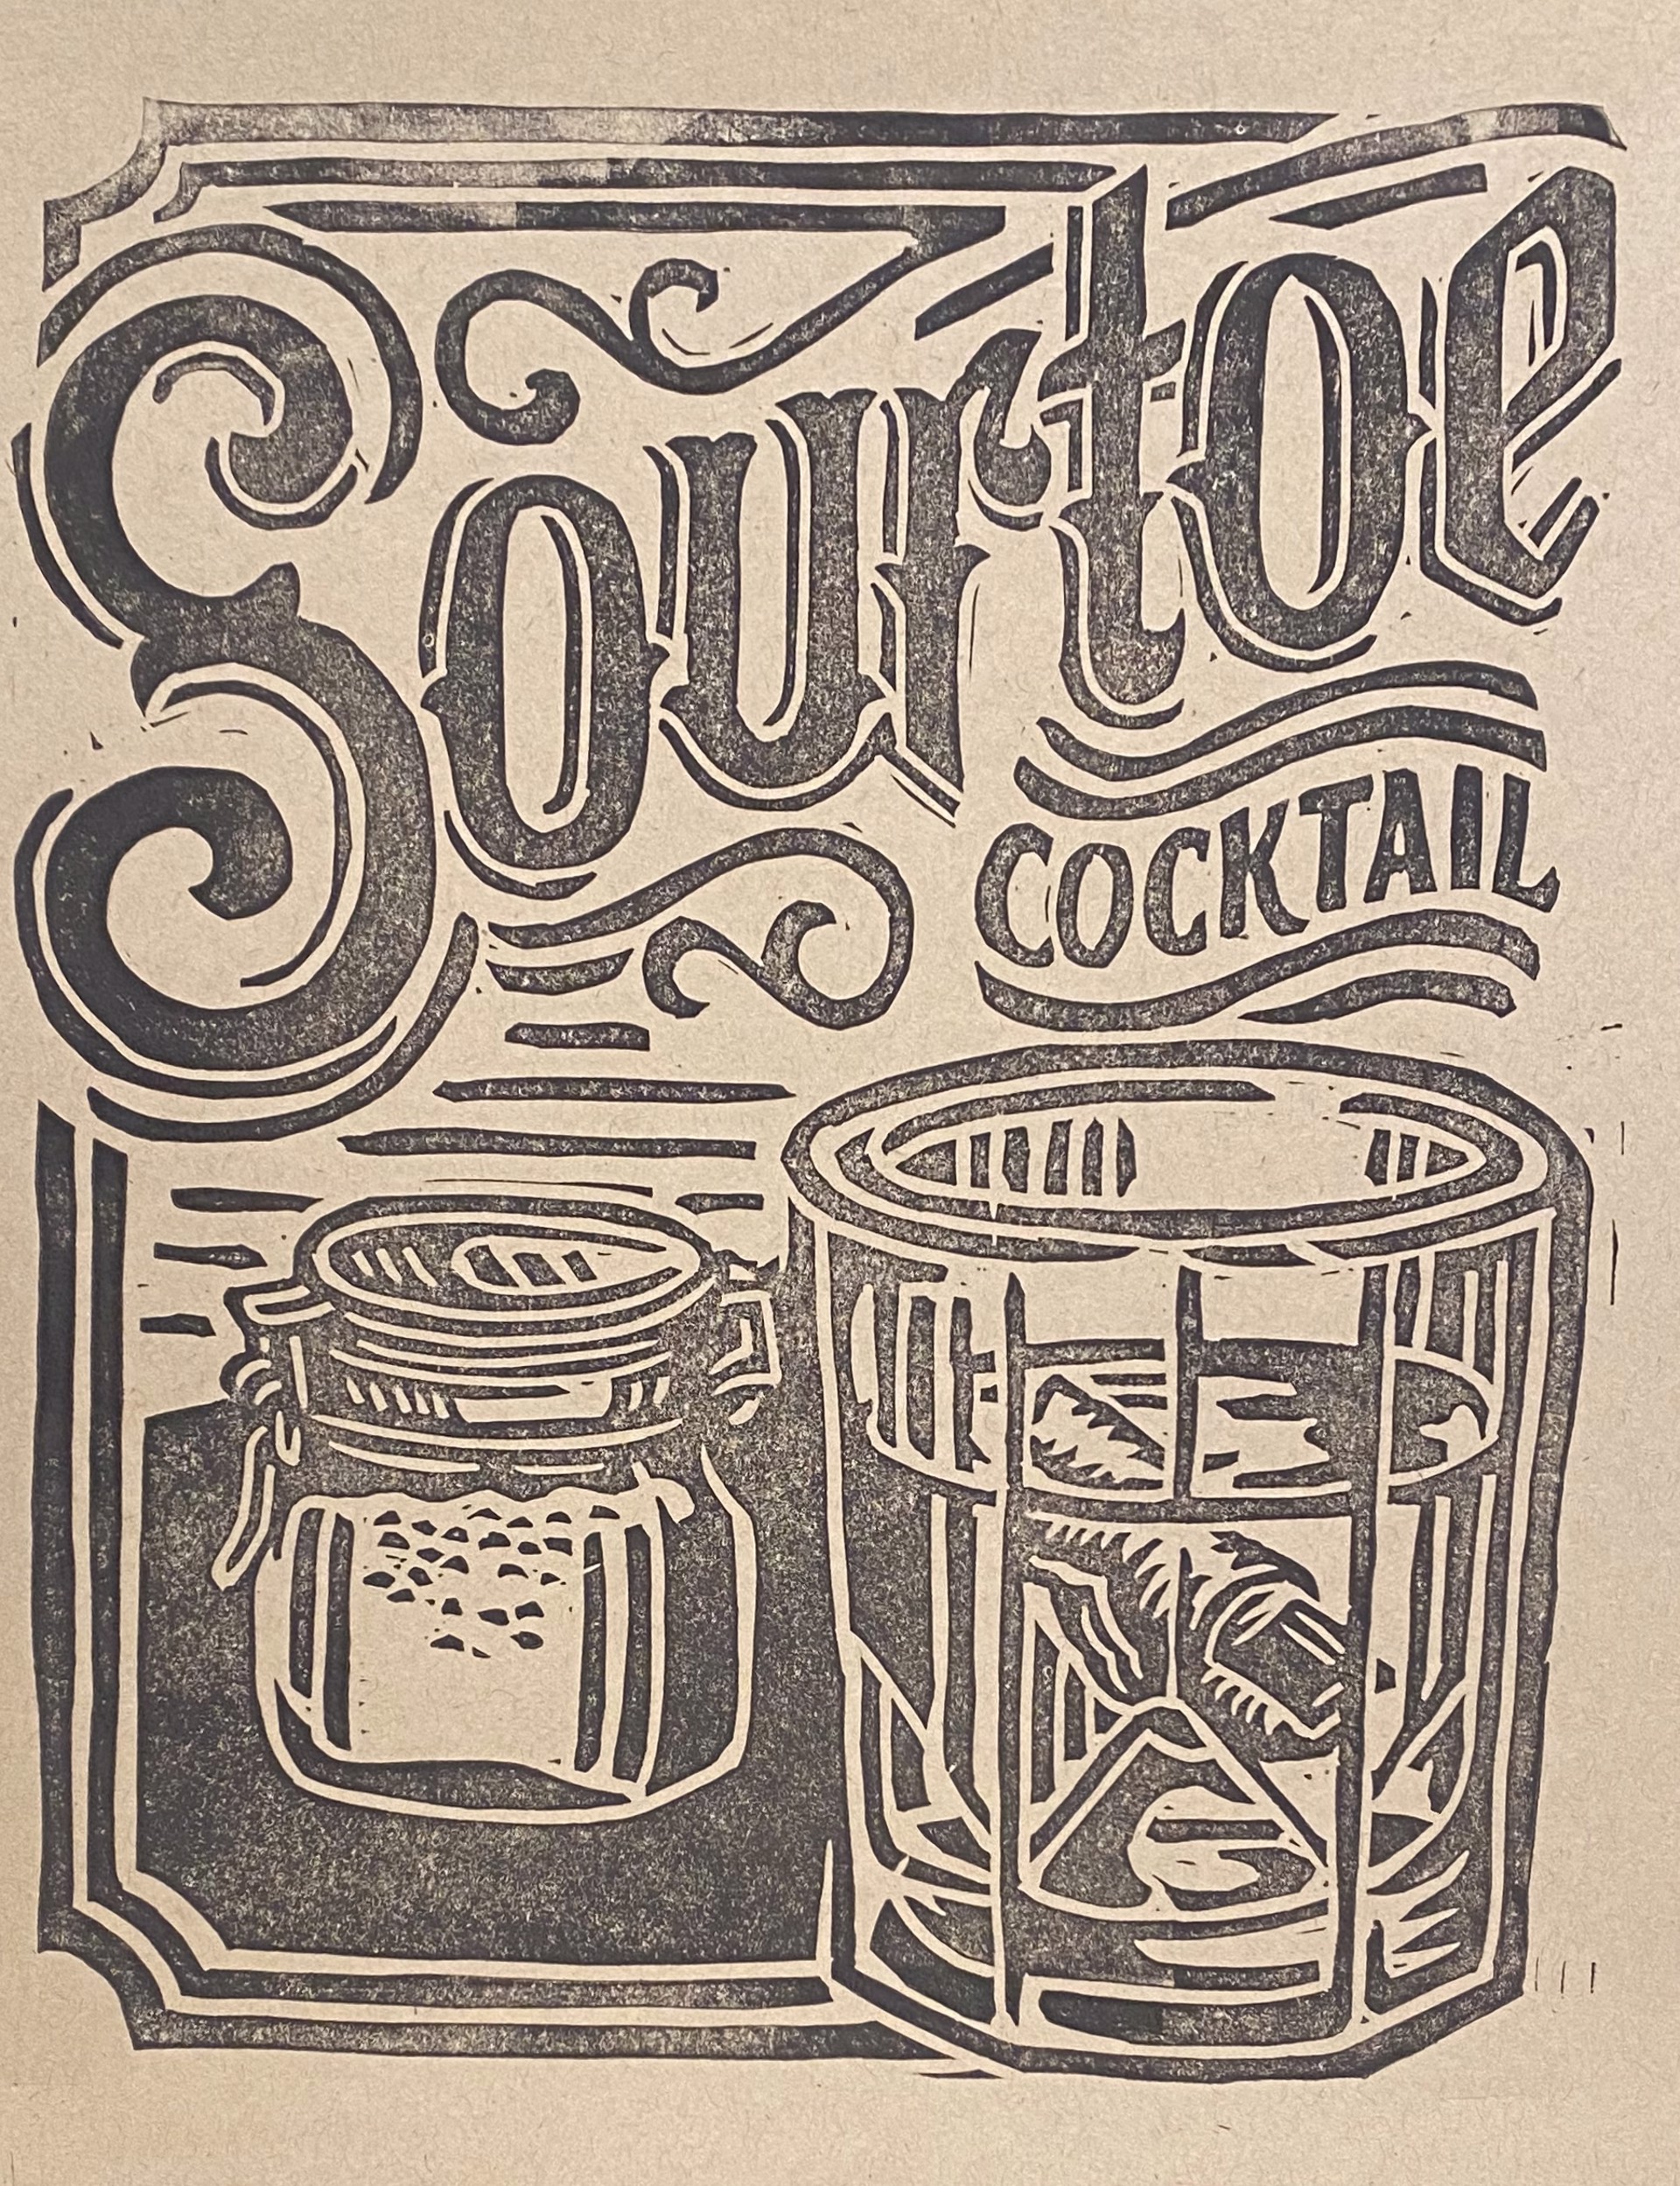 Sourtoe by Derrick Castle